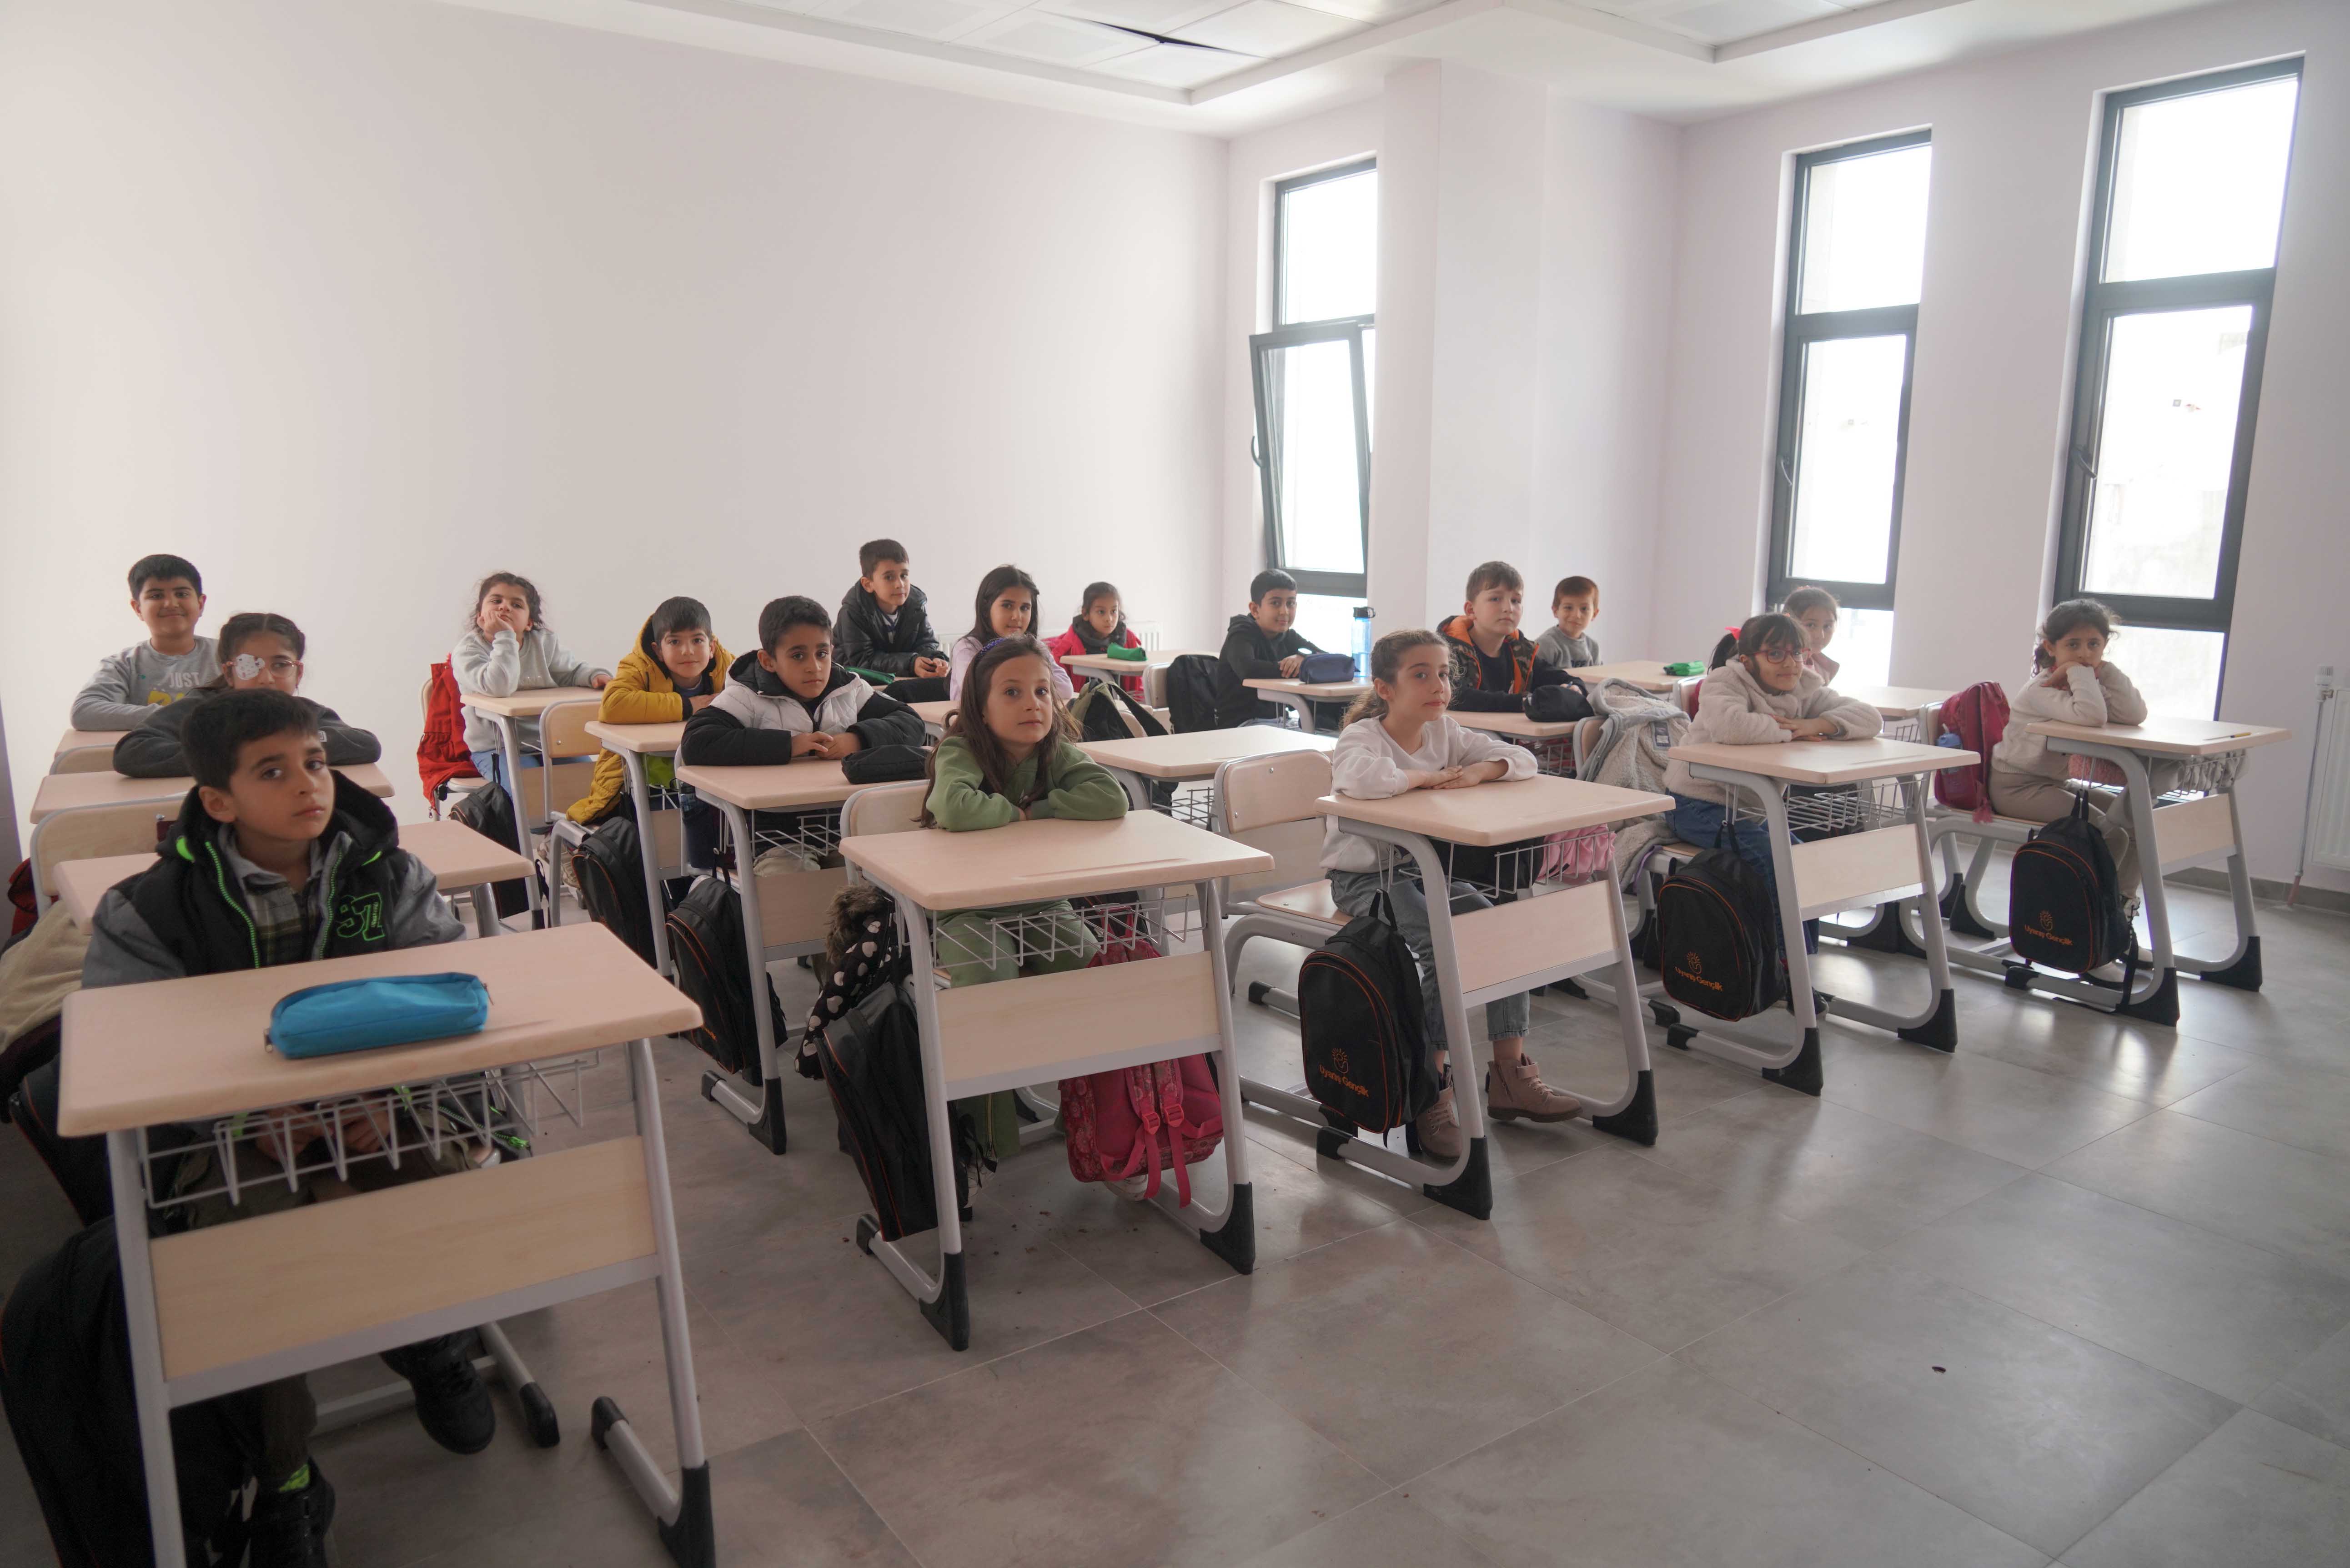 Diyarbakır’da Kutbettin Arzu Bilgi Evi ve Akademi Lise açıldı